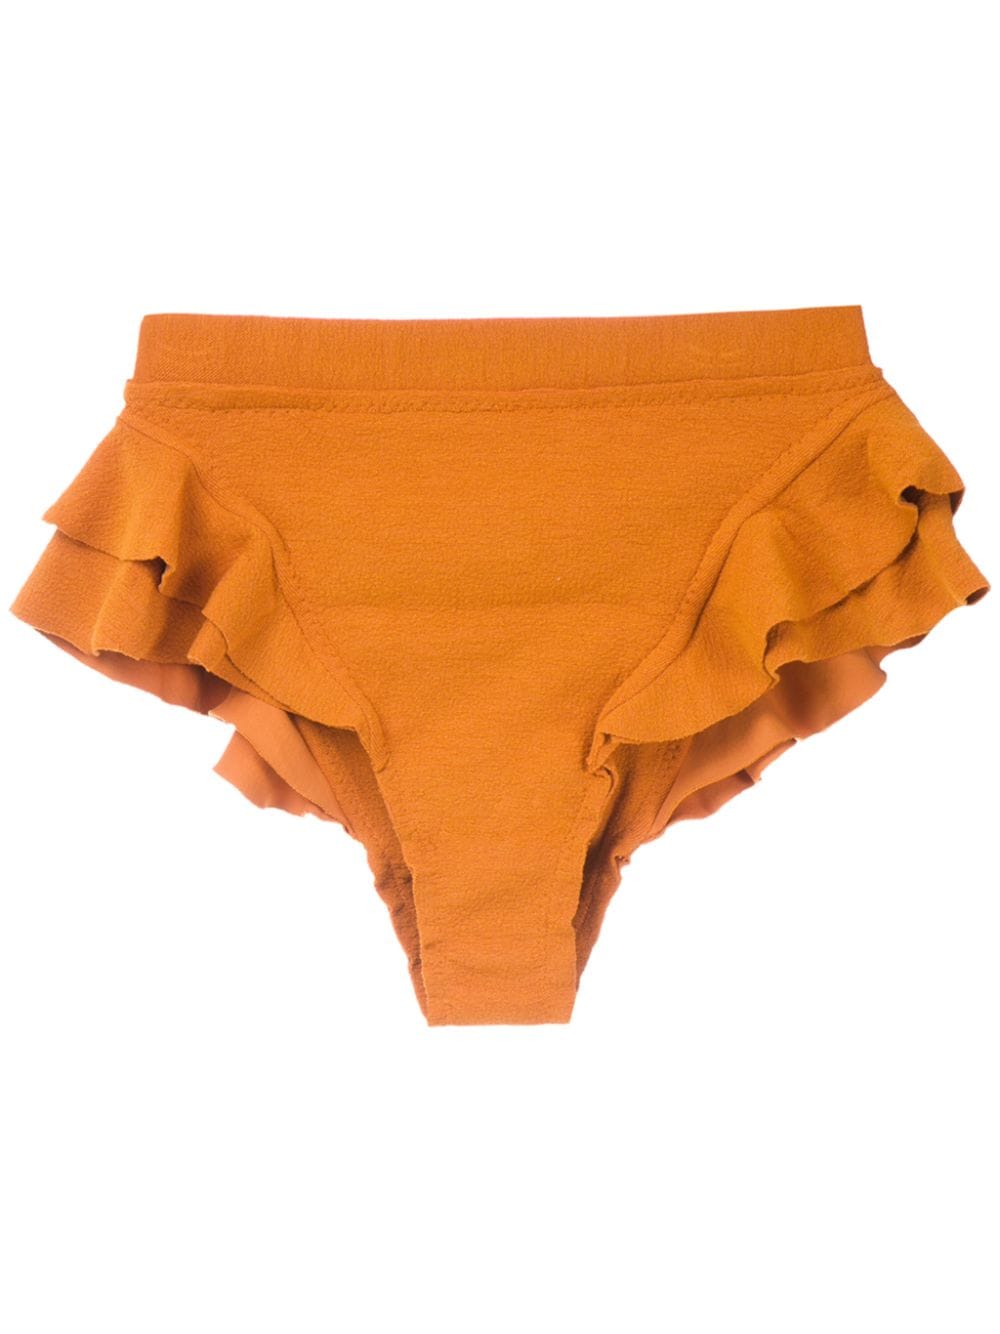 Clube Bossa Turbe bikini bottoms - Orange von Clube Bossa